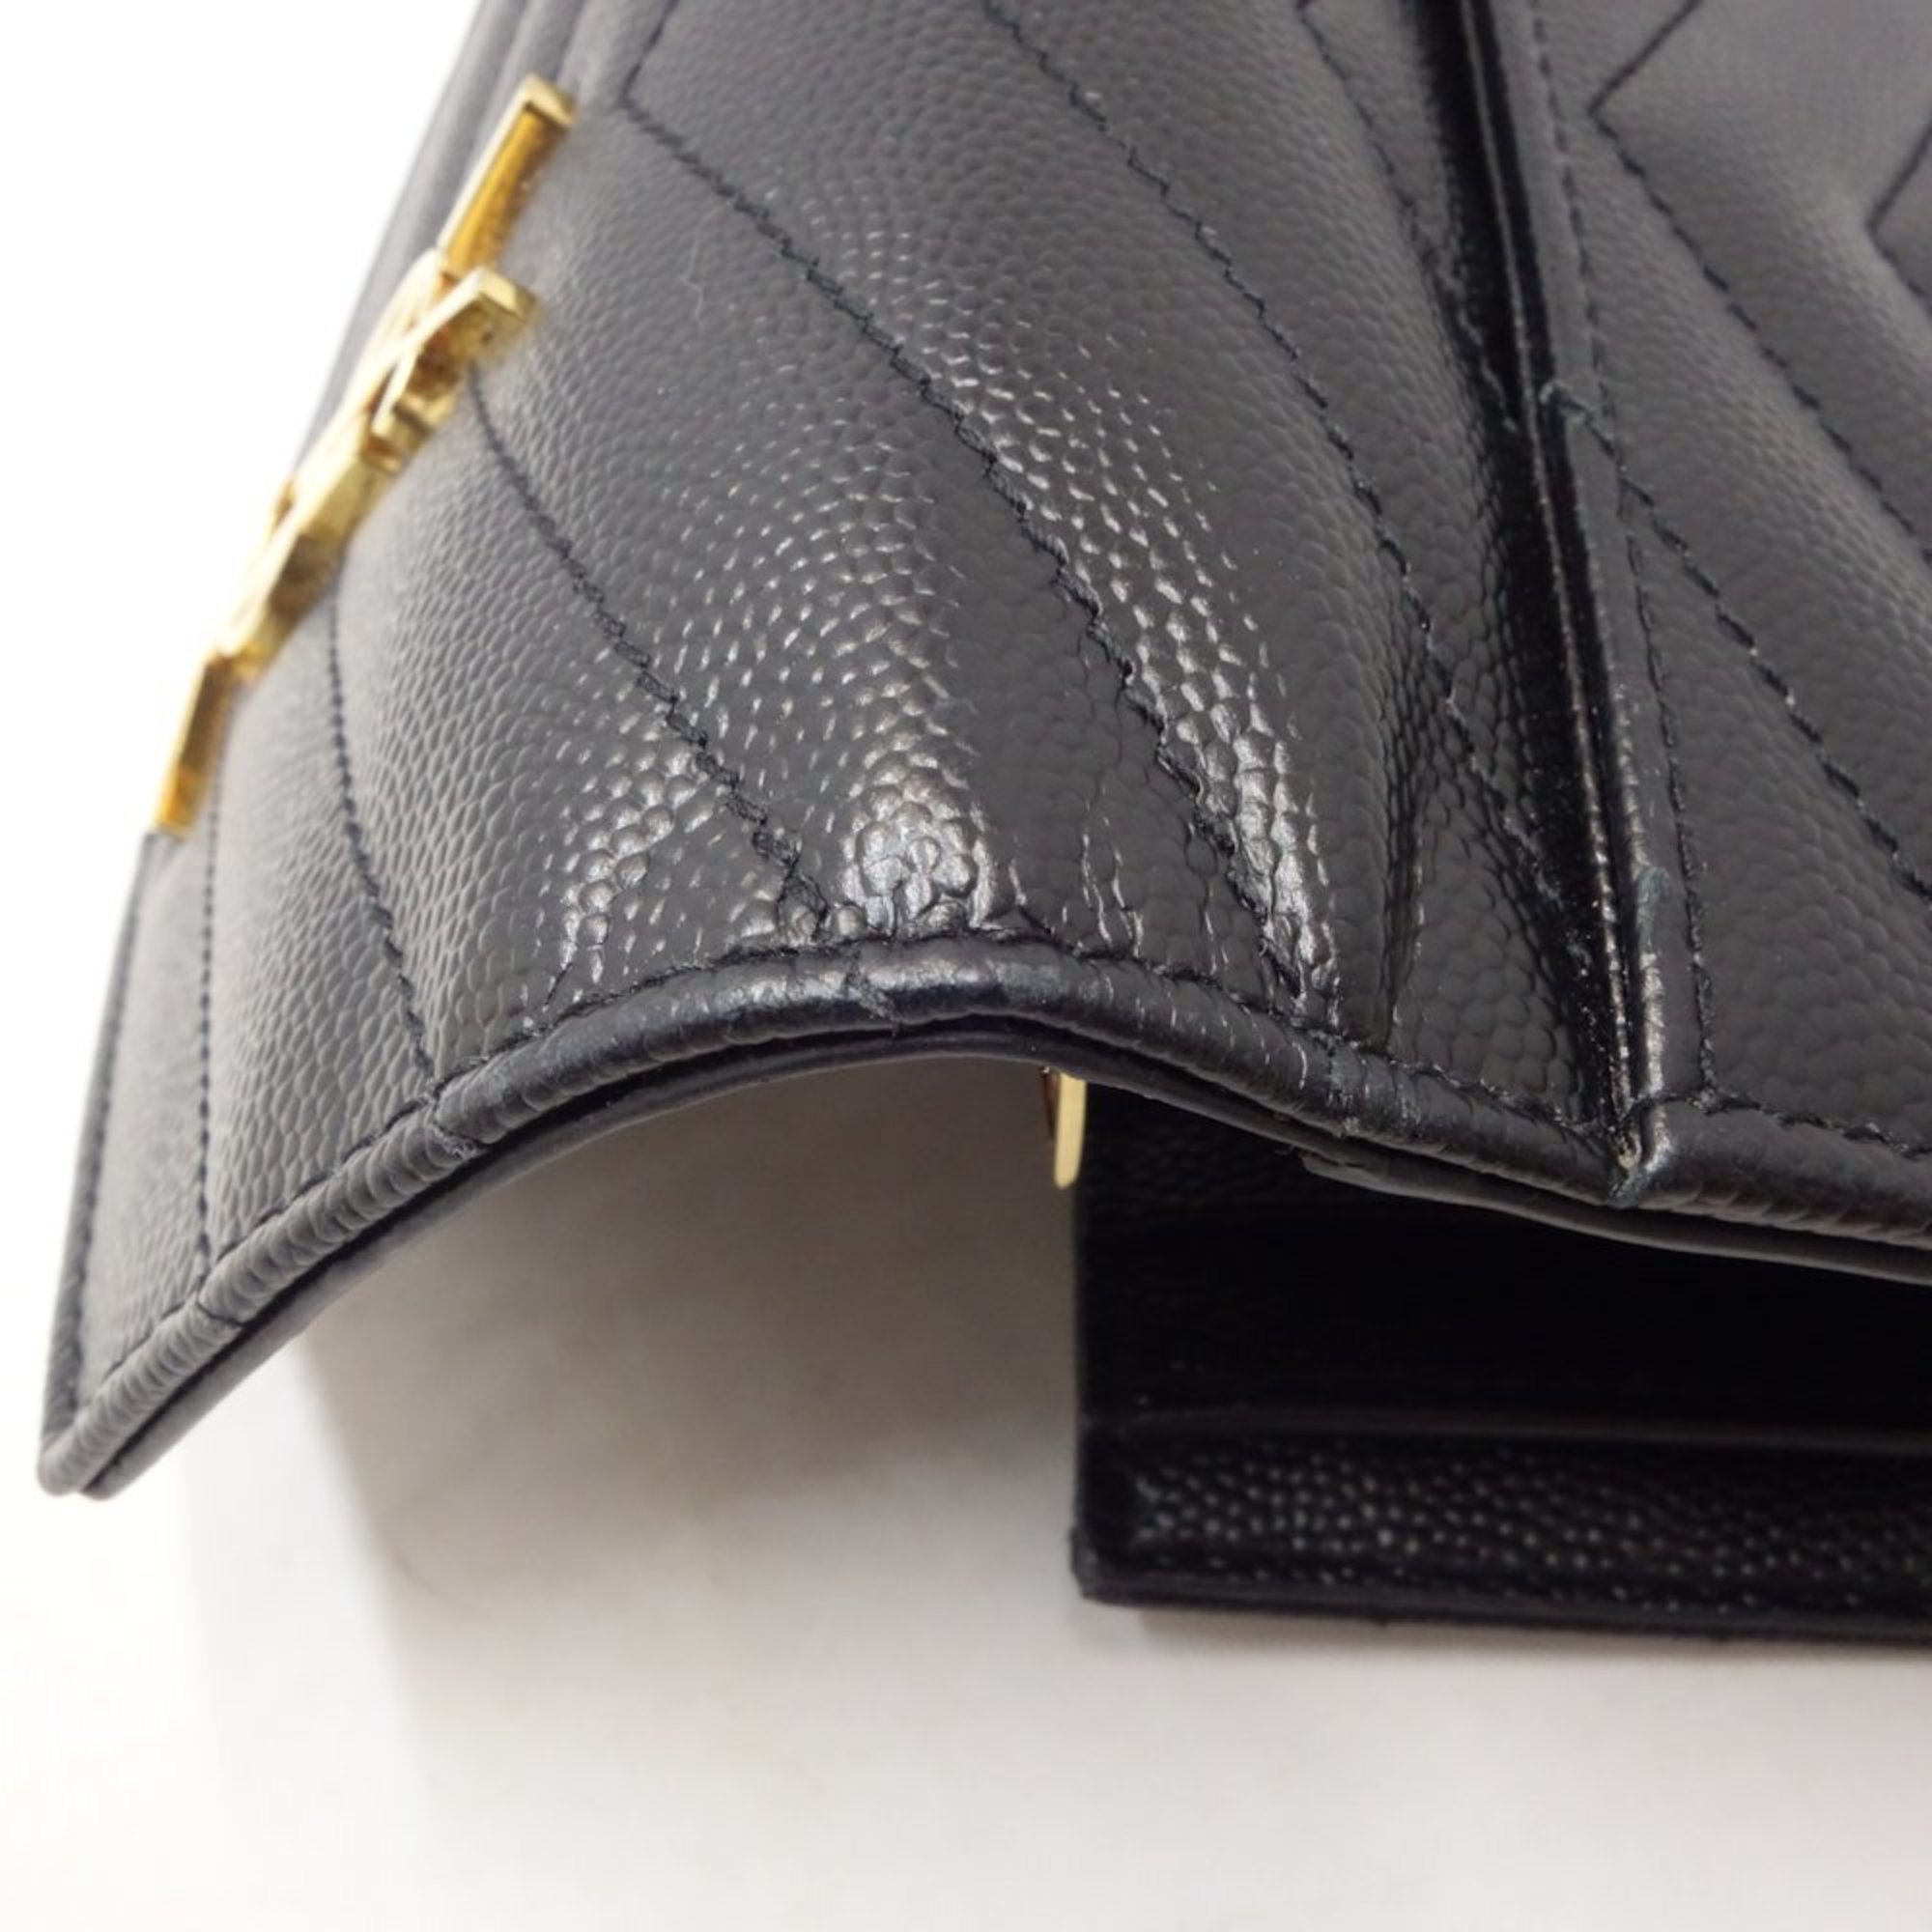 Saint Laurent SAINT LAURENT PARIS YSL Trifold Wallet Compact Threefold Leather Black 403943 082677